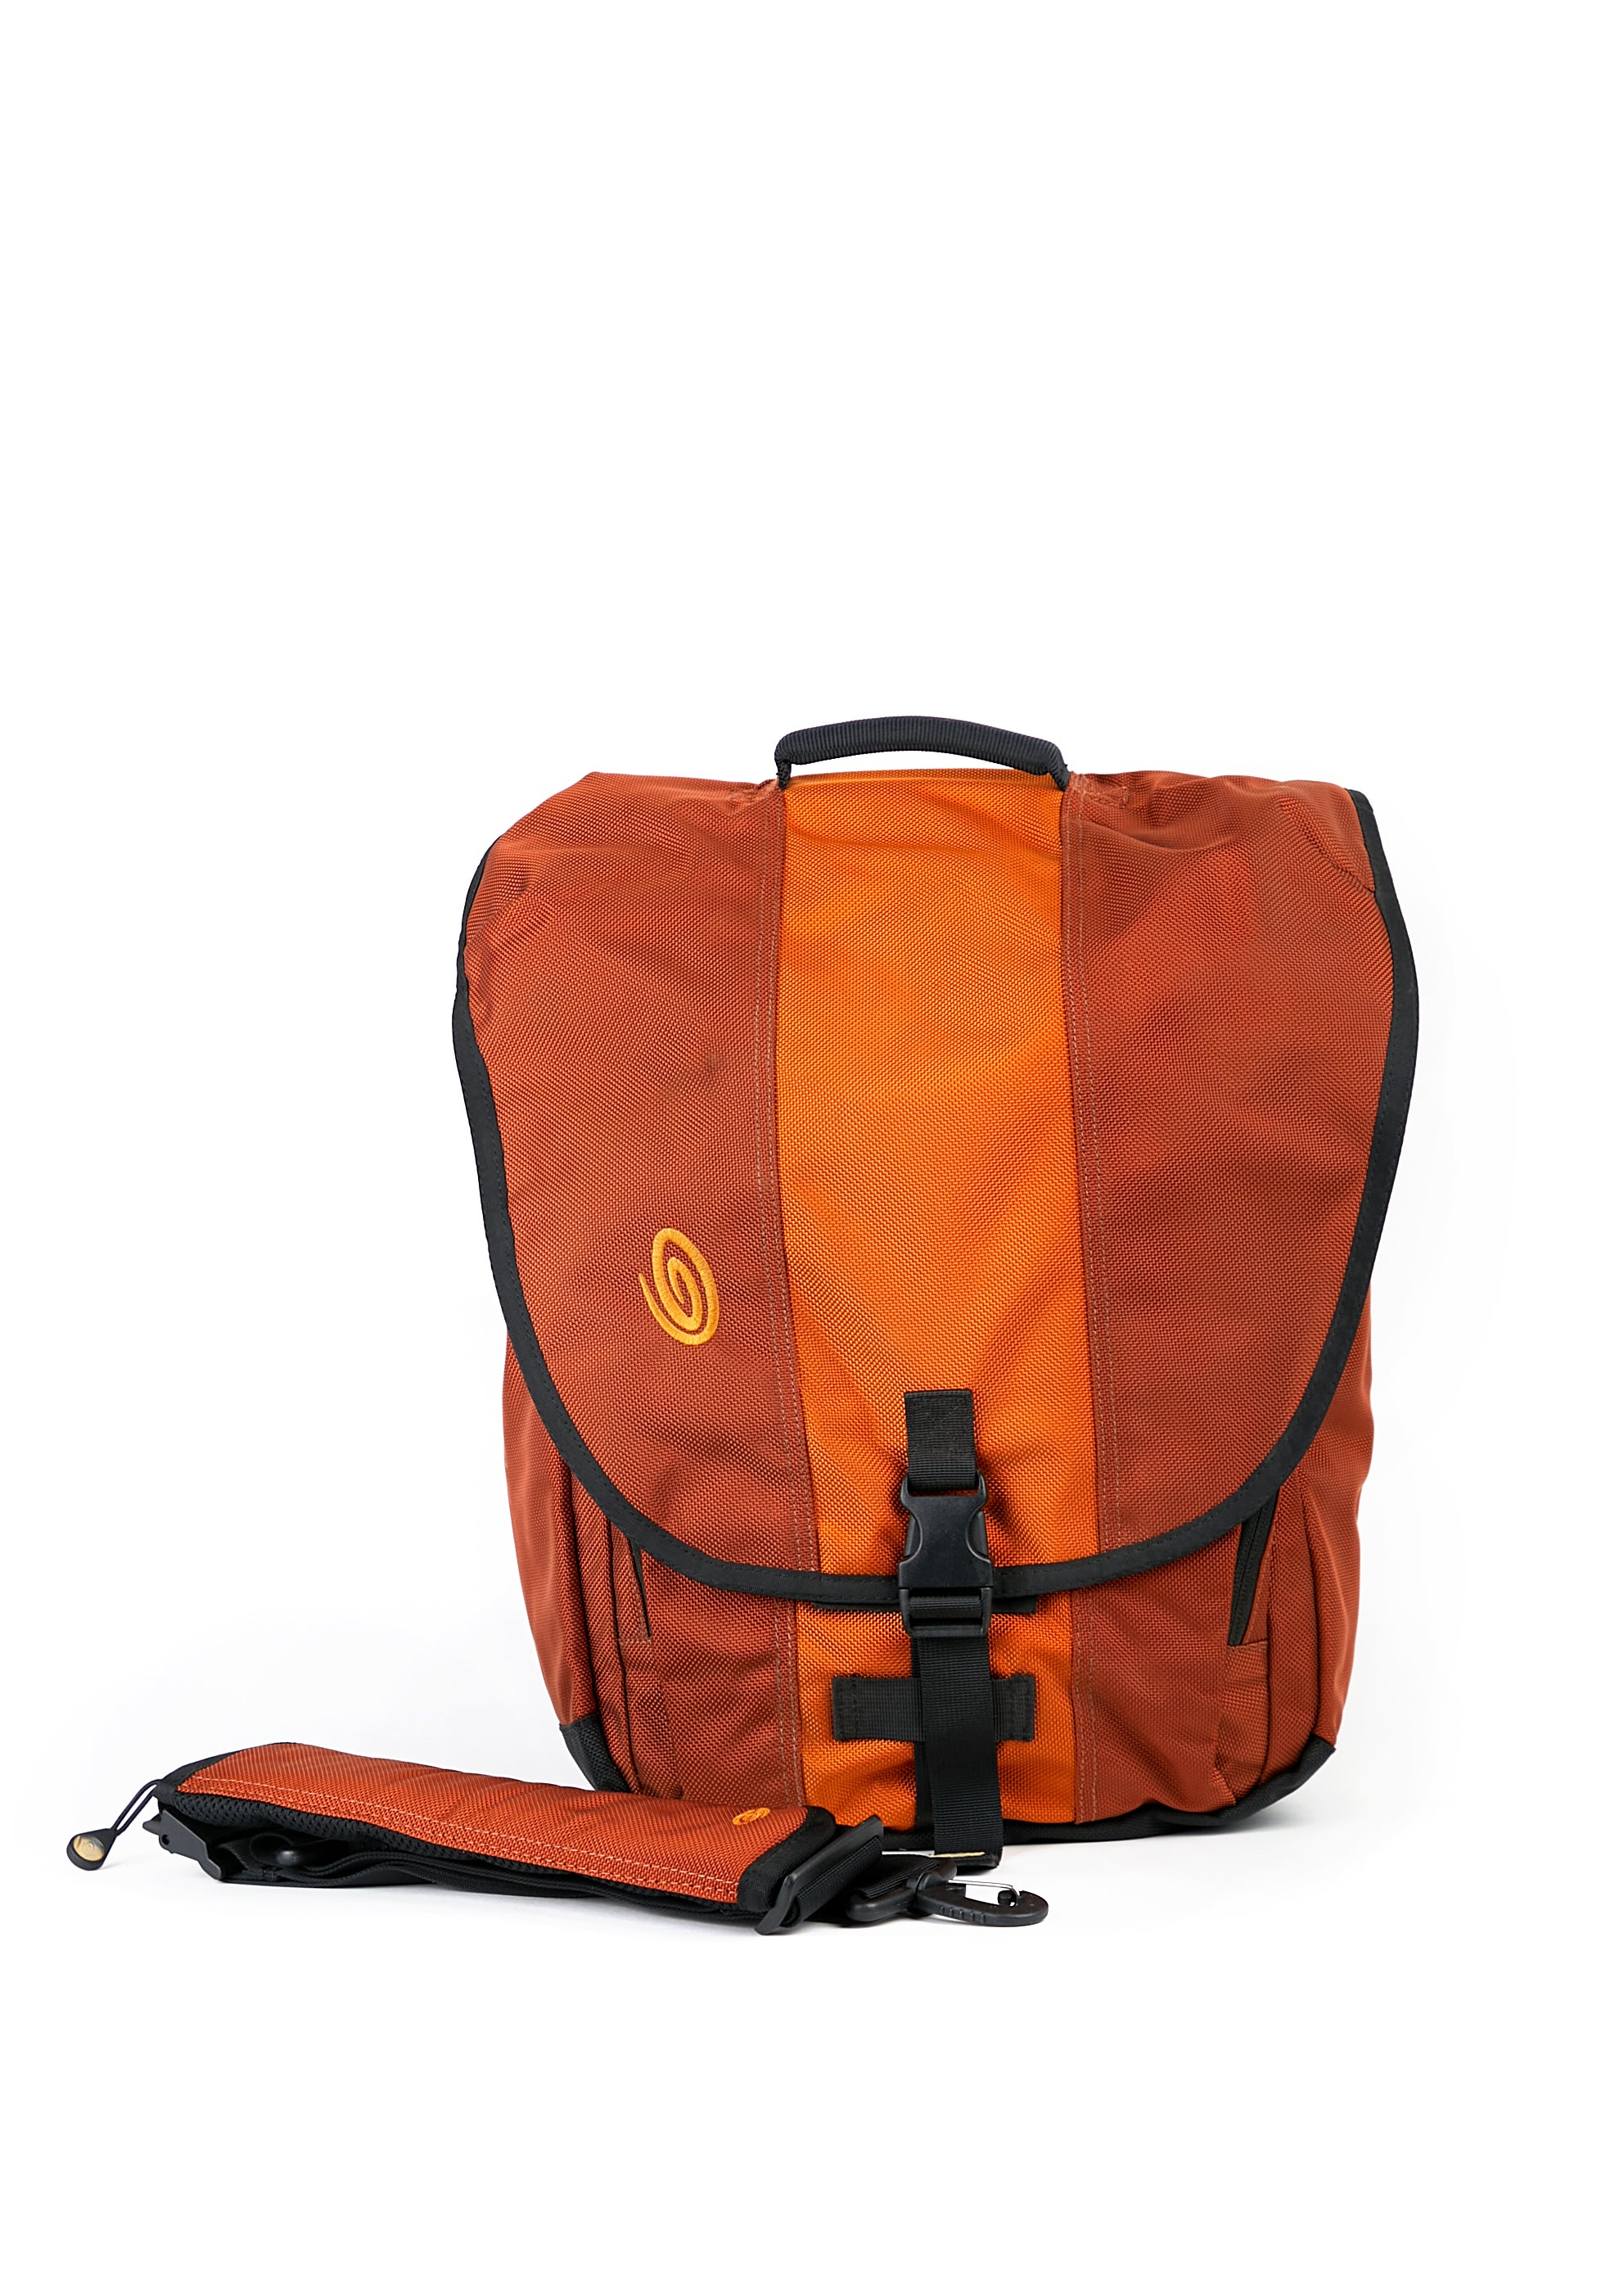 Timbuk2 Catapult Sling Padded Messenger Shoulder Bag Orange Brown